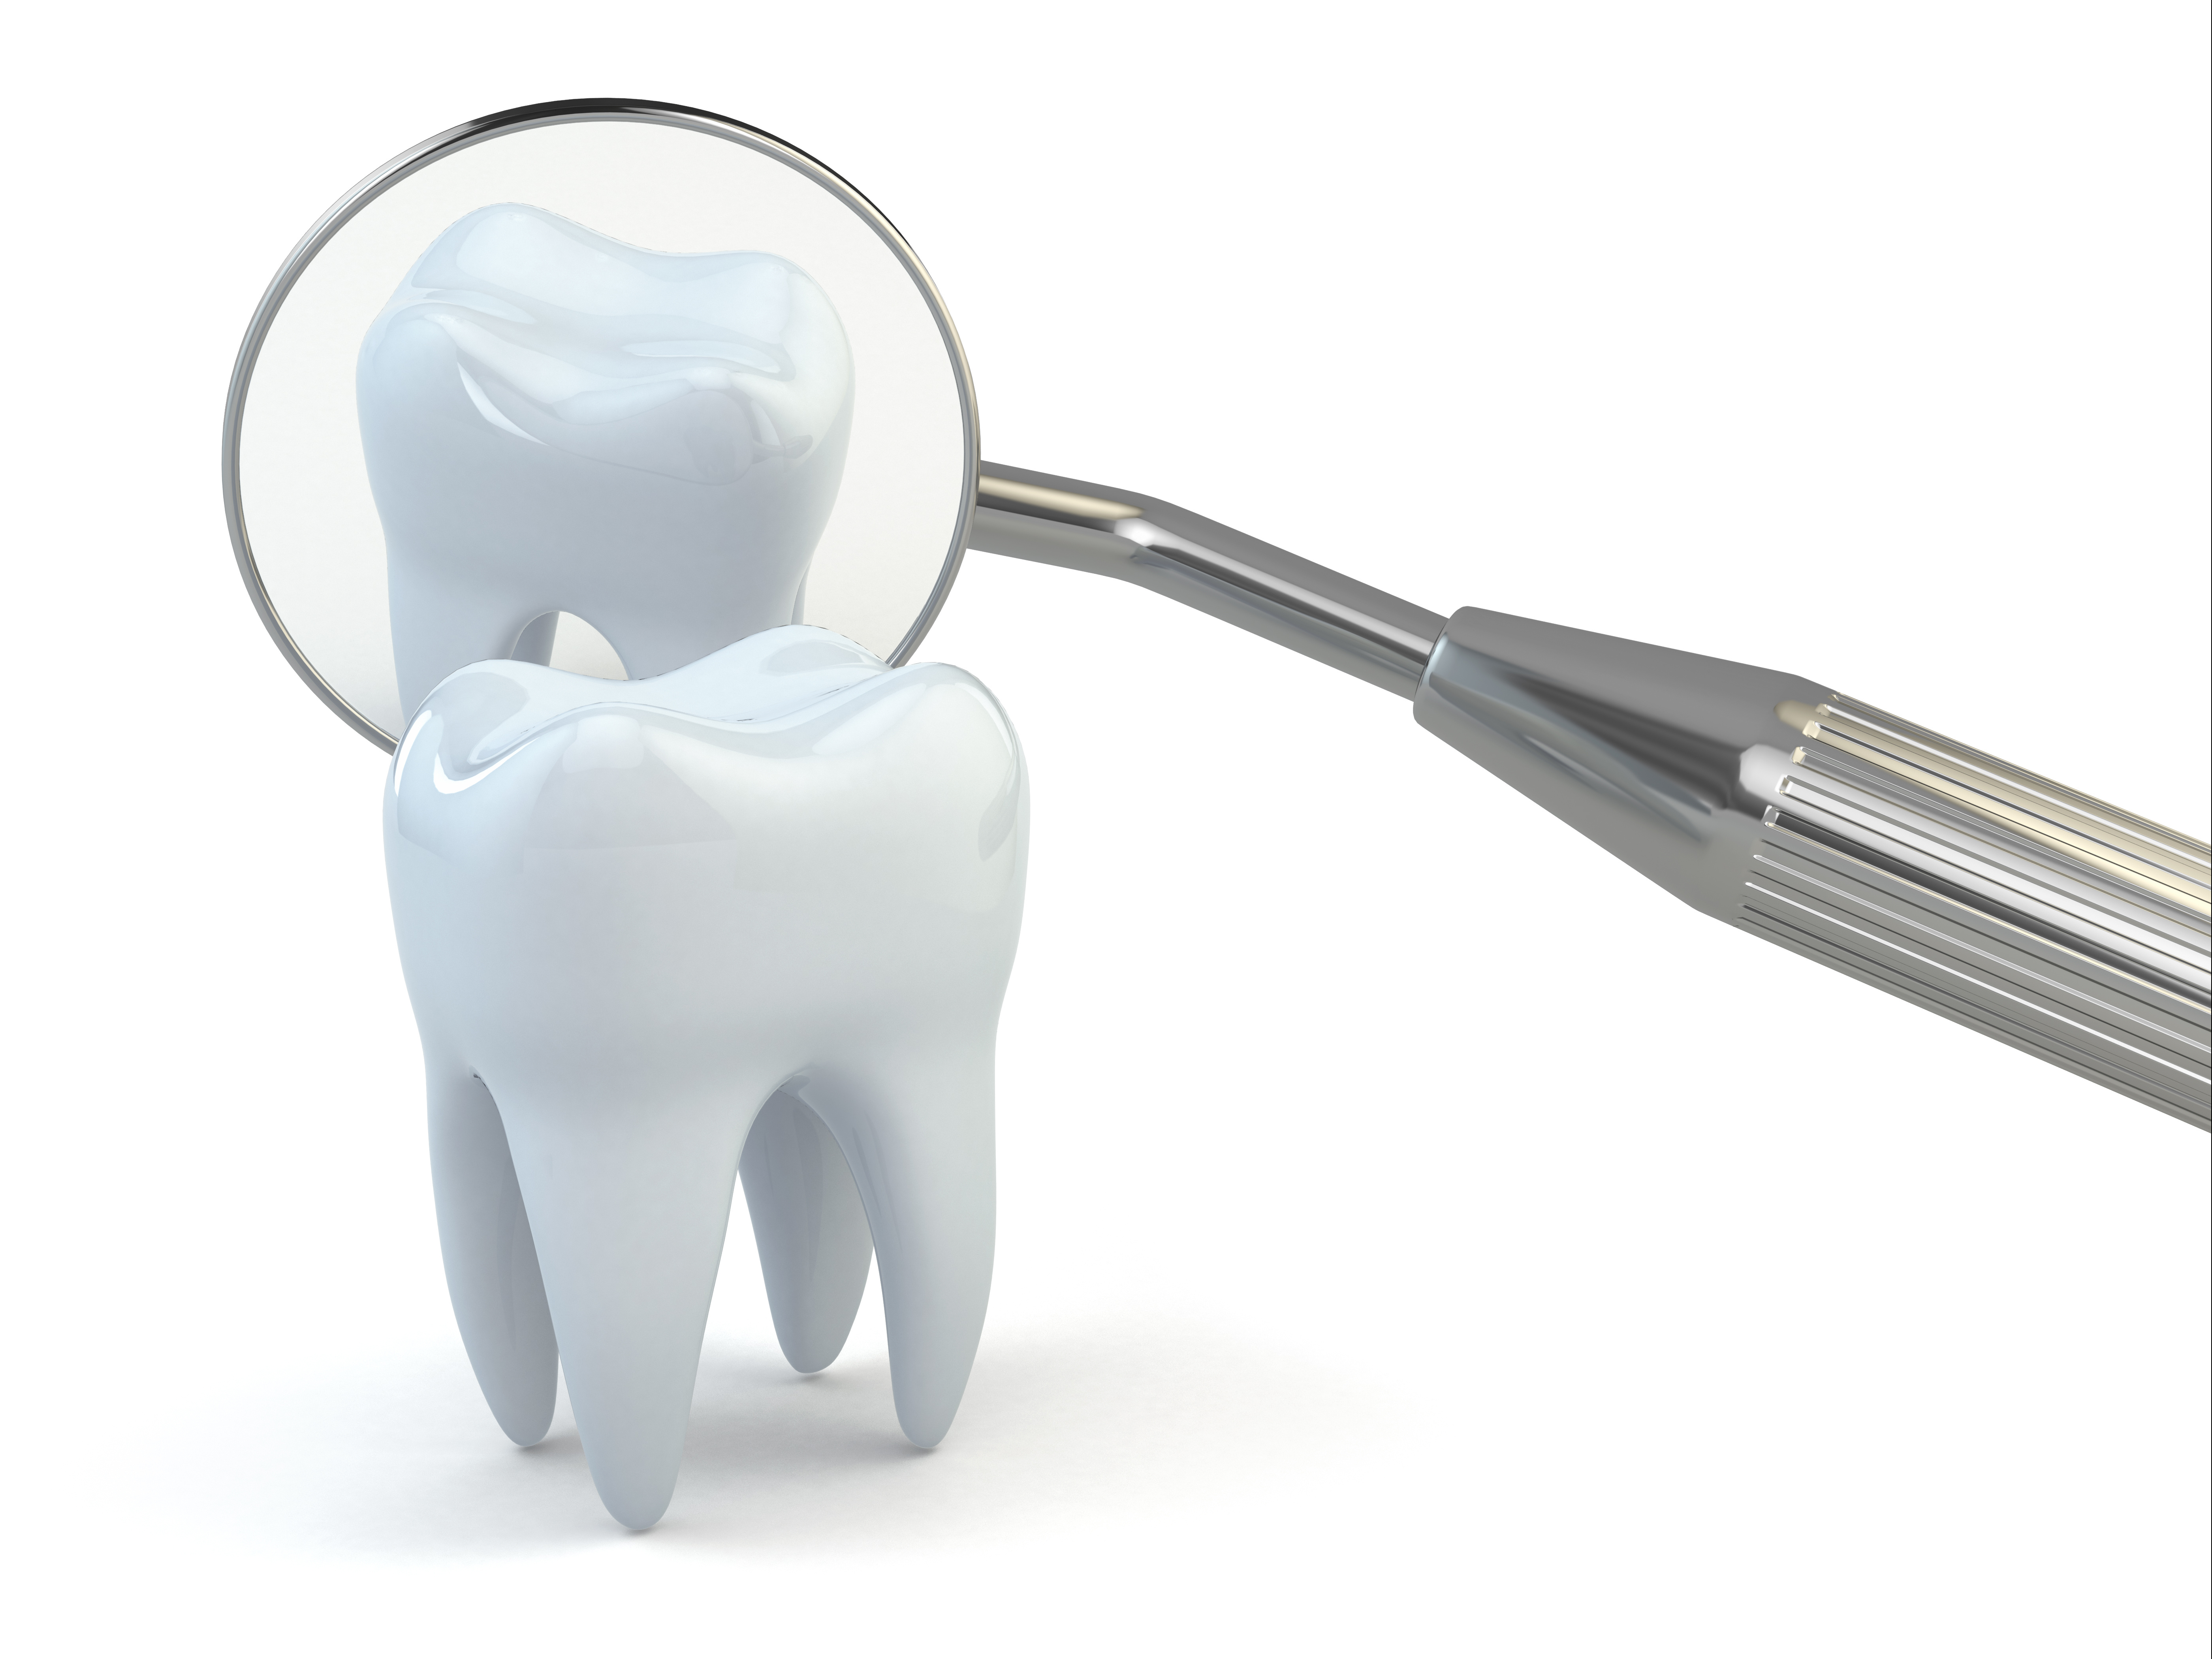 Tooth extraction. Инструменты для стомотолог. Зубы стоматология. Стоматологические приборы. Стоматология зубы и инструменты.